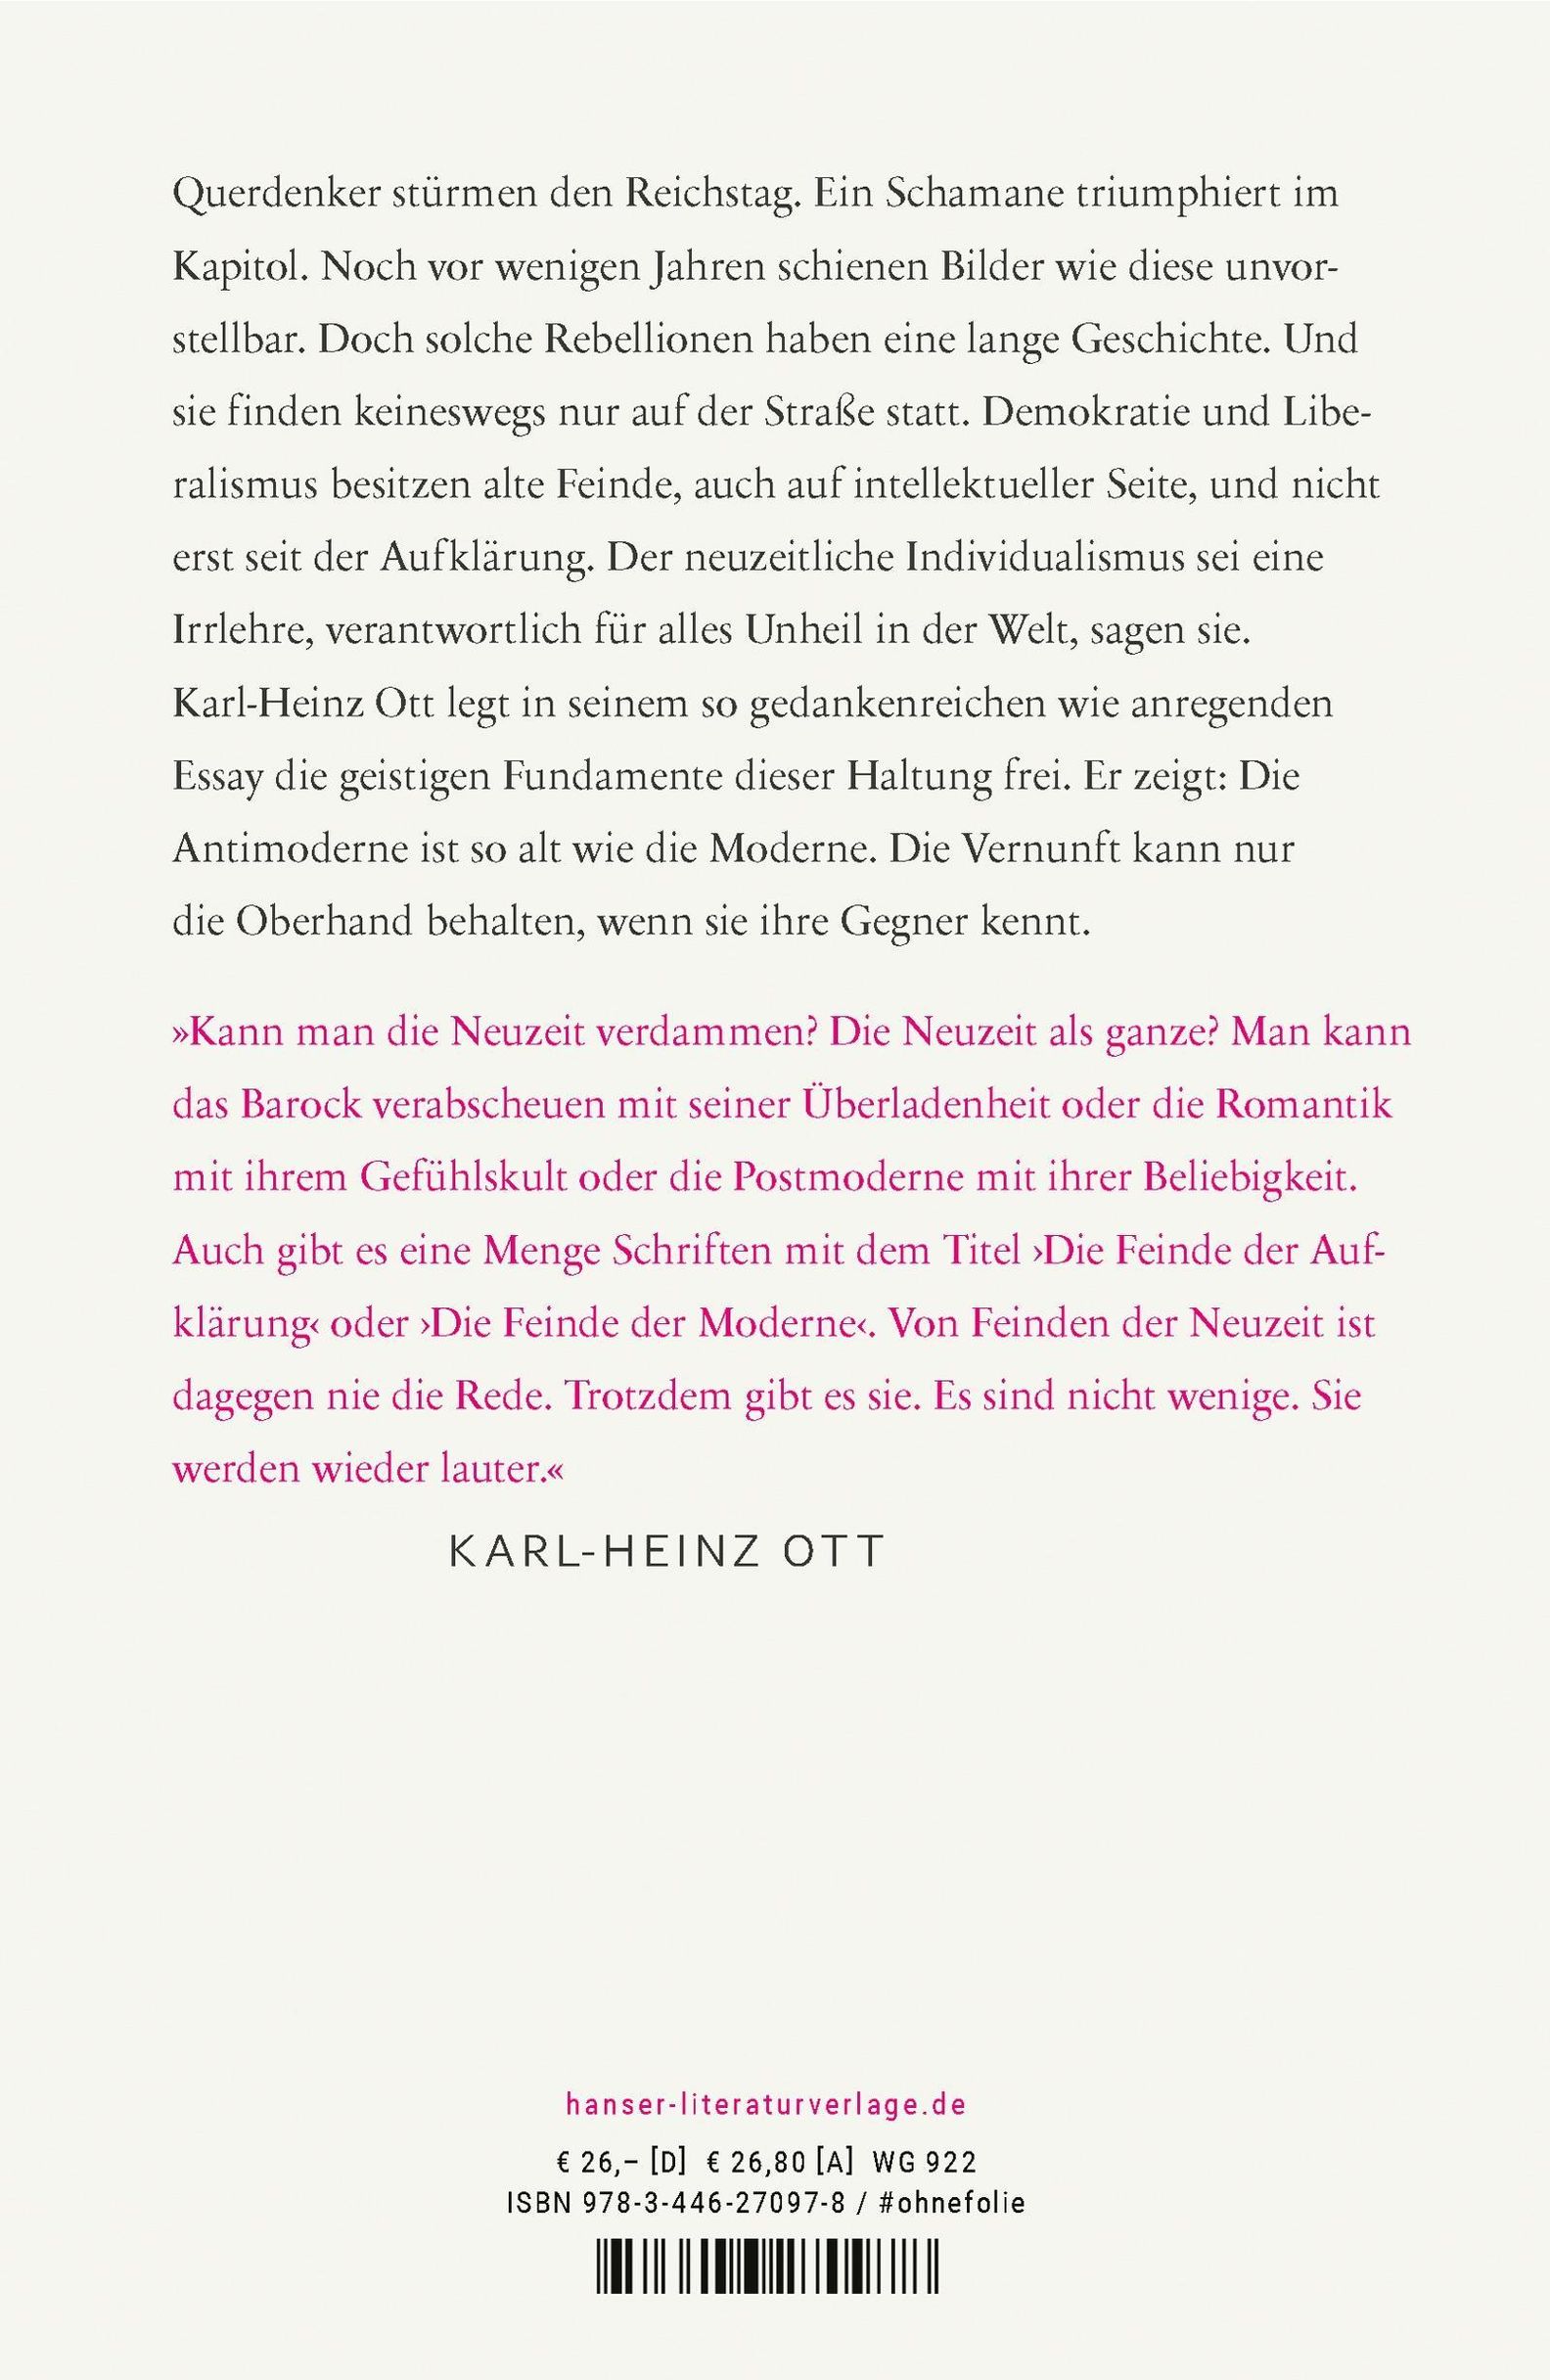 Verfluchte Neuzeit Buch von Karl-Heinz Ott versandkostenfrei - Weltbild.de